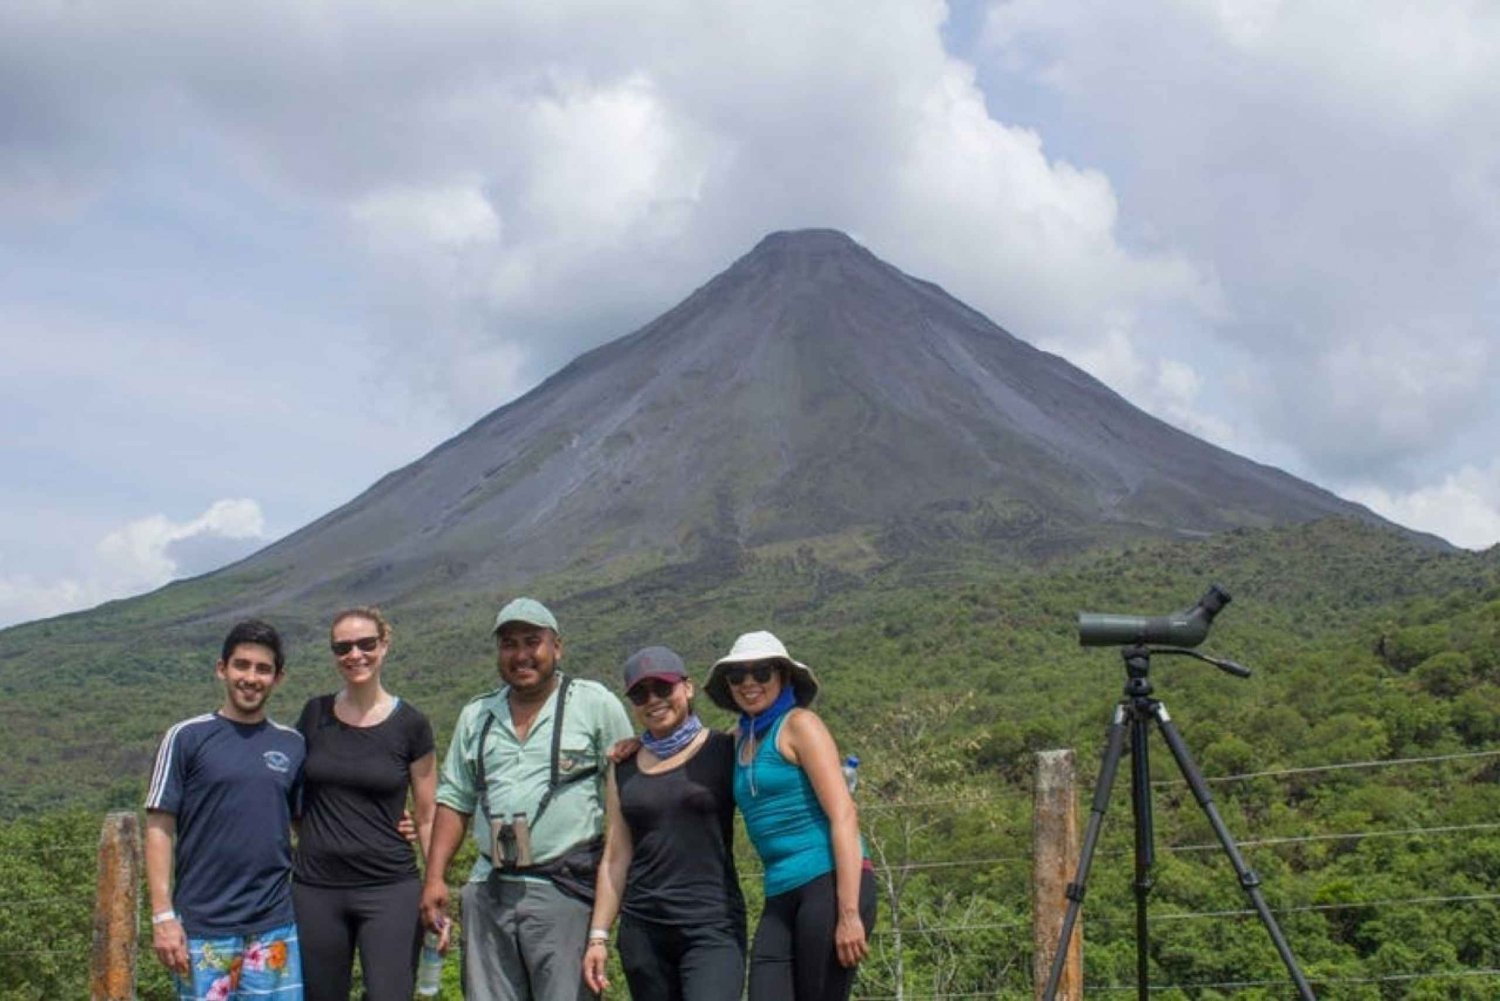 Escursione al vulcano Arenal 3 in 1, ponti sospesi e cascata